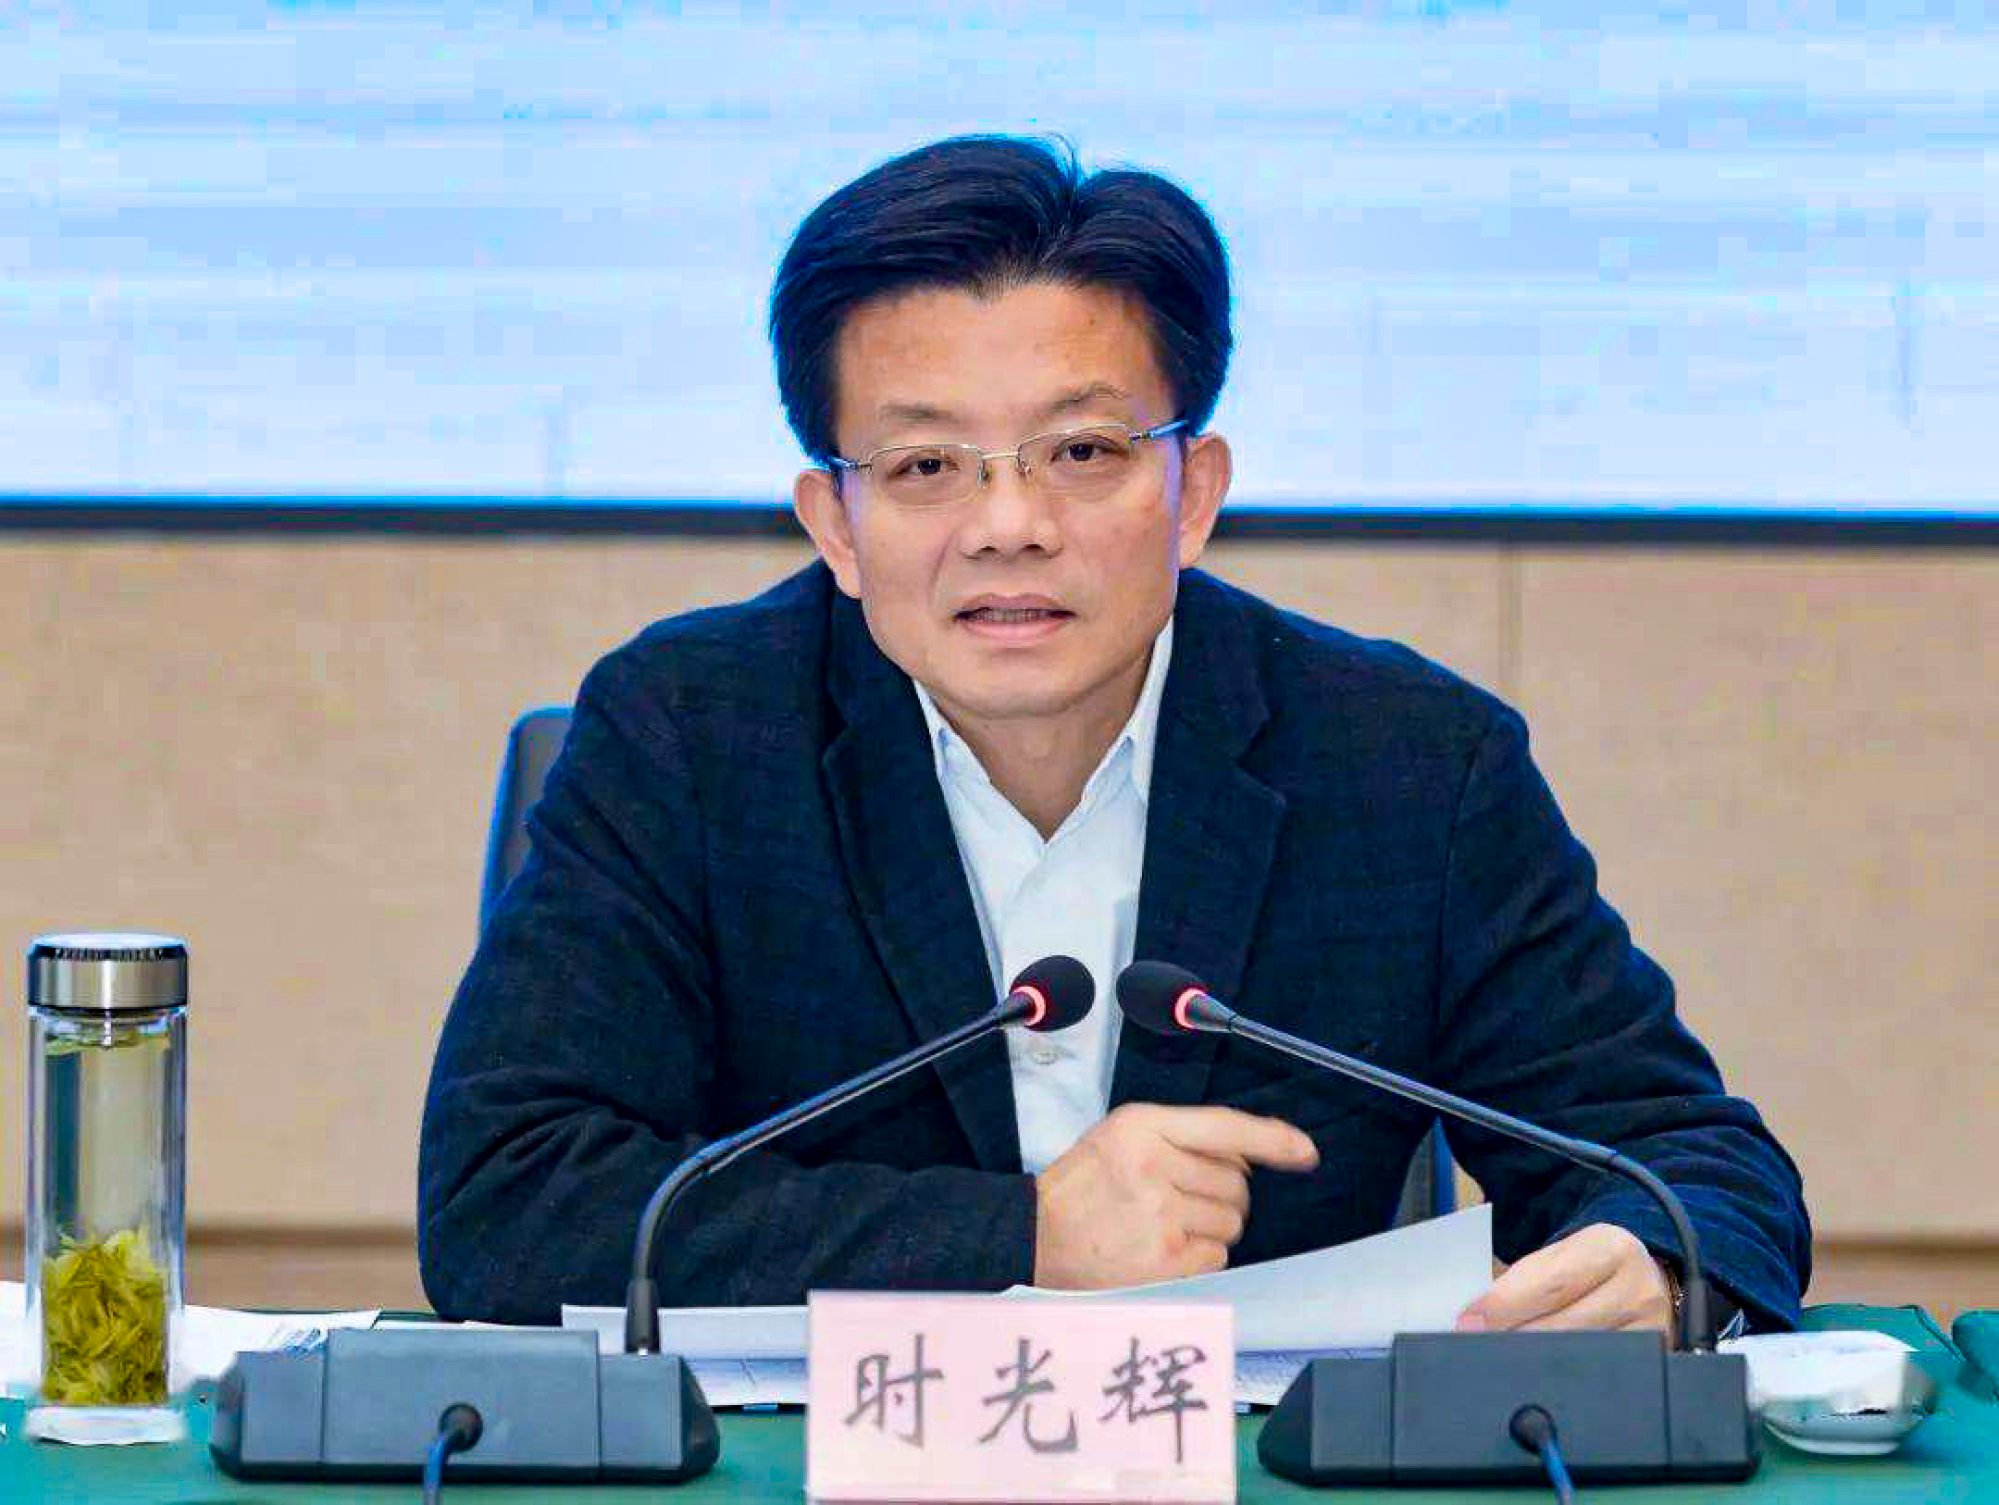 Shi Guanghui, Guizhou’s deputy secretary, benefitted from his experience in Shanghai. Photo: Weibo